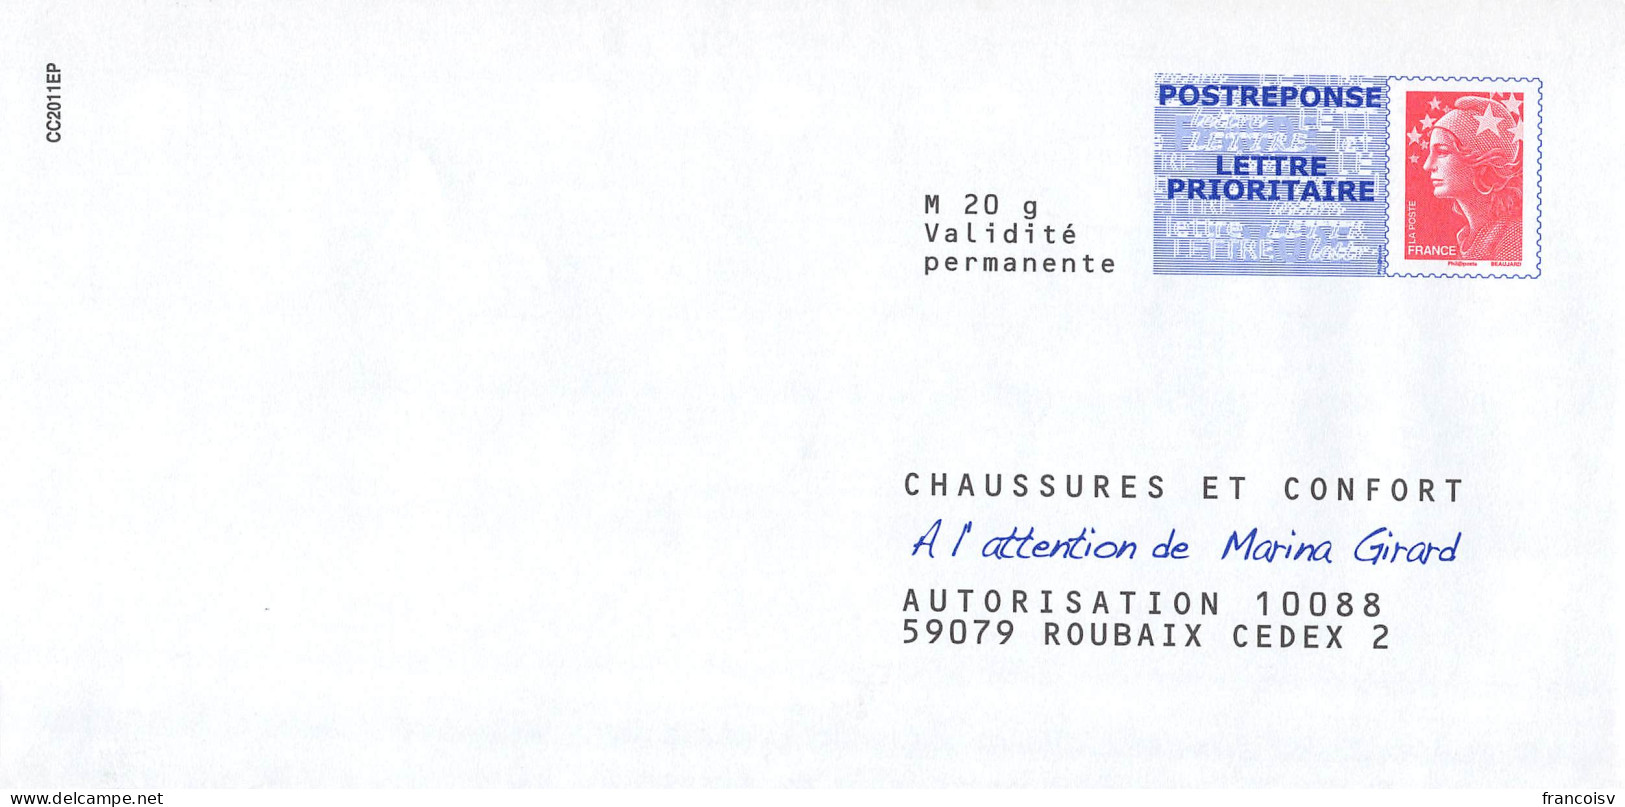 Lot de 55 enveloppes neuves PAP Prêt à poster Postreponse Marianne Ciappa kawena beaujard luquet lamouche... L3